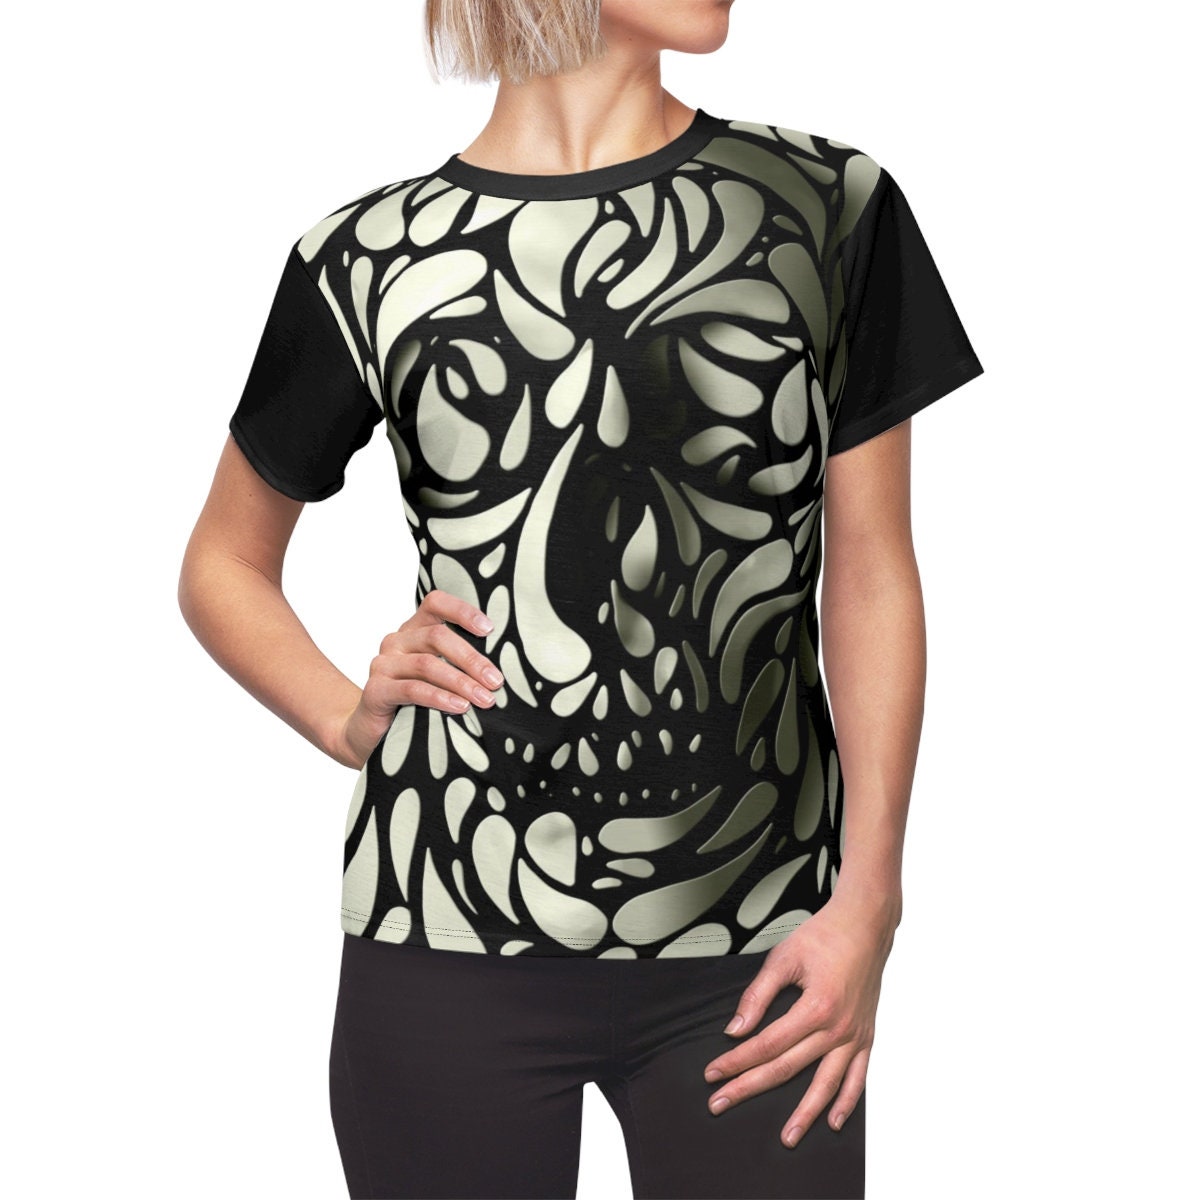 3D Skull Women's T-Shirt,  All Over Print Skull Womens Shirt, Gothic Sugar Skull Gift For Her, Skull Pattern Shirt